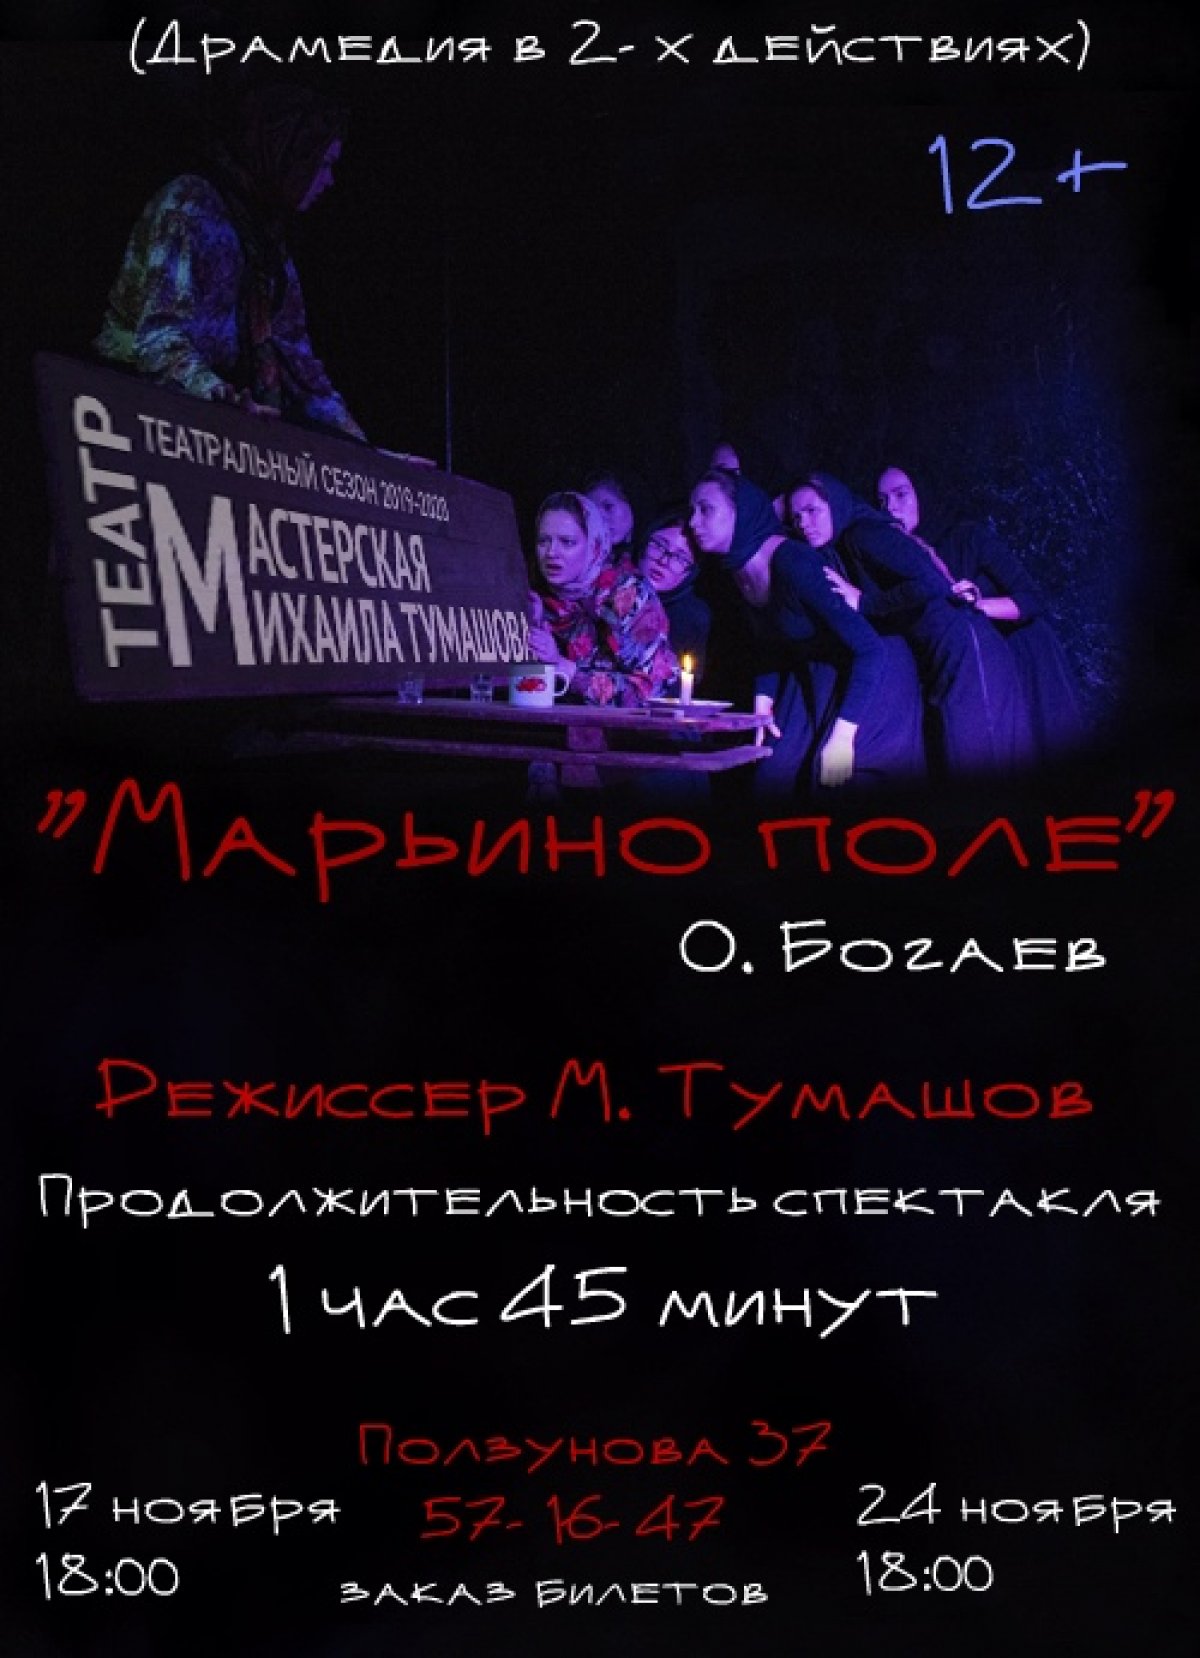 17 и 24 ноября студенты 2 курса АДТ (Худ. руководитель М.А. Тумашов) играют спектакль на теАRТральной площадке «СПИЧКА», Ползунова 37, заказ билетов: 57-16-47